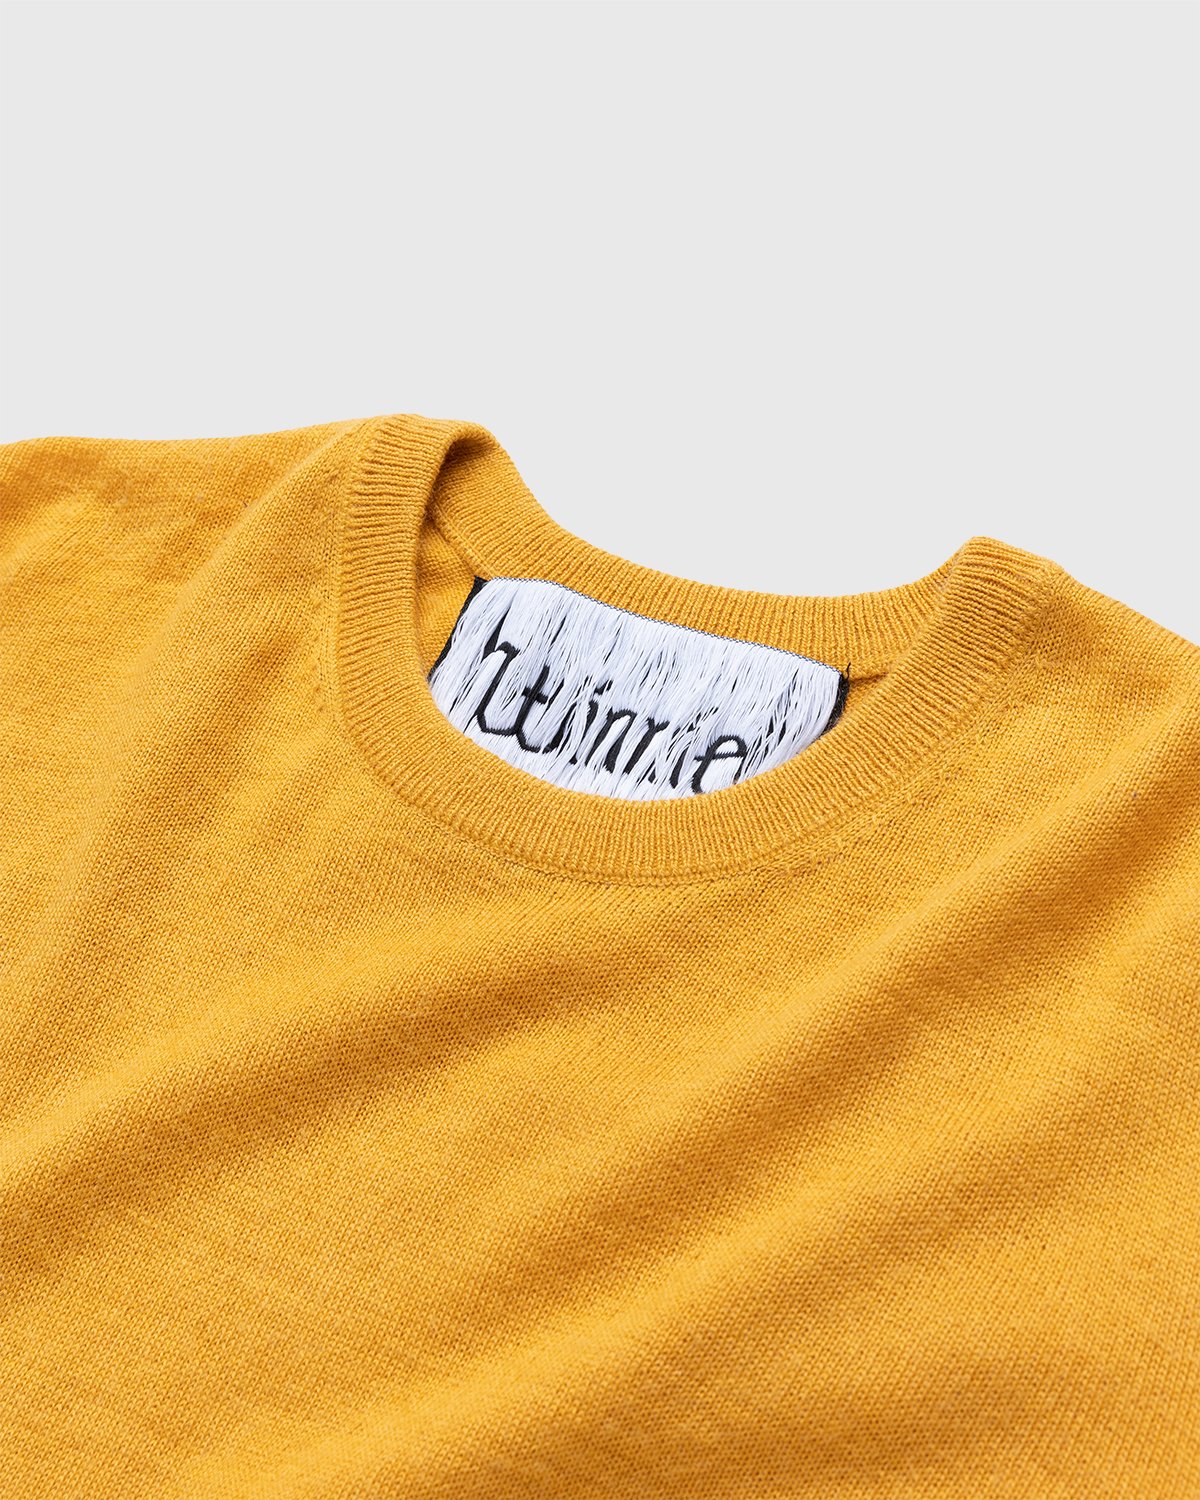 Winnie New York - Crew Sweater Mustard - Clothing - Yellow - Image 3